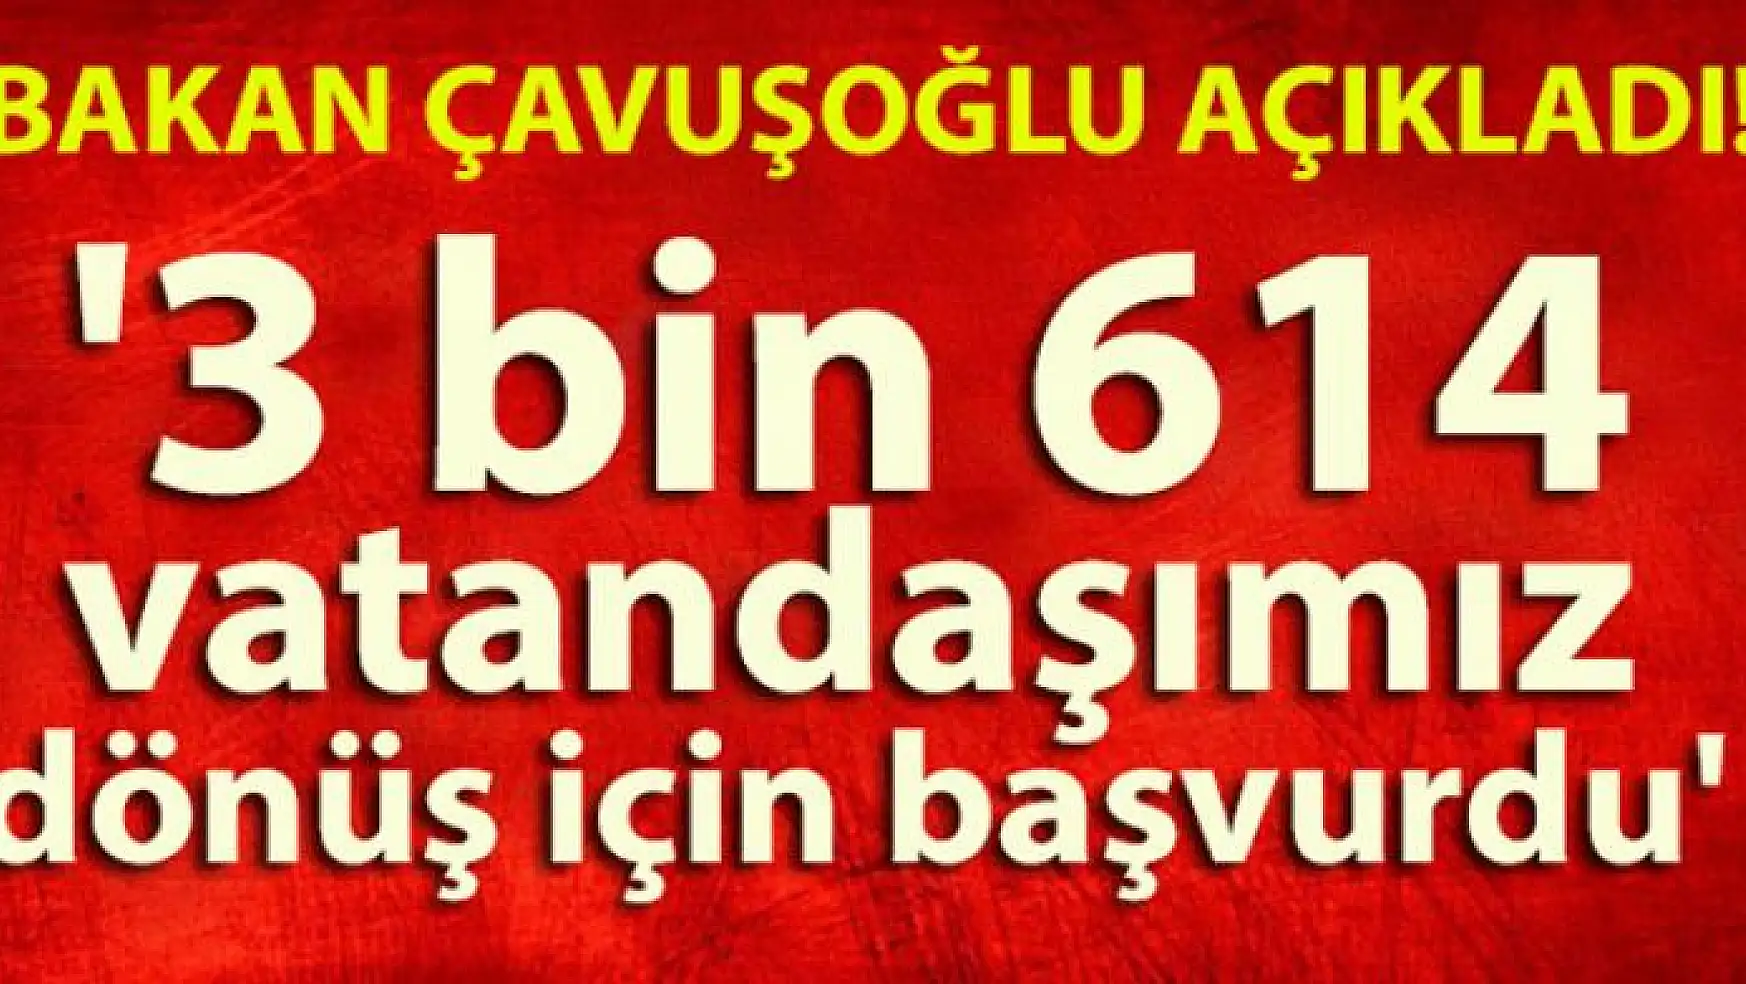 Bakan Çavuşoğlu: '3 bin 614 vatandaşımız dönüş için başvurdu'